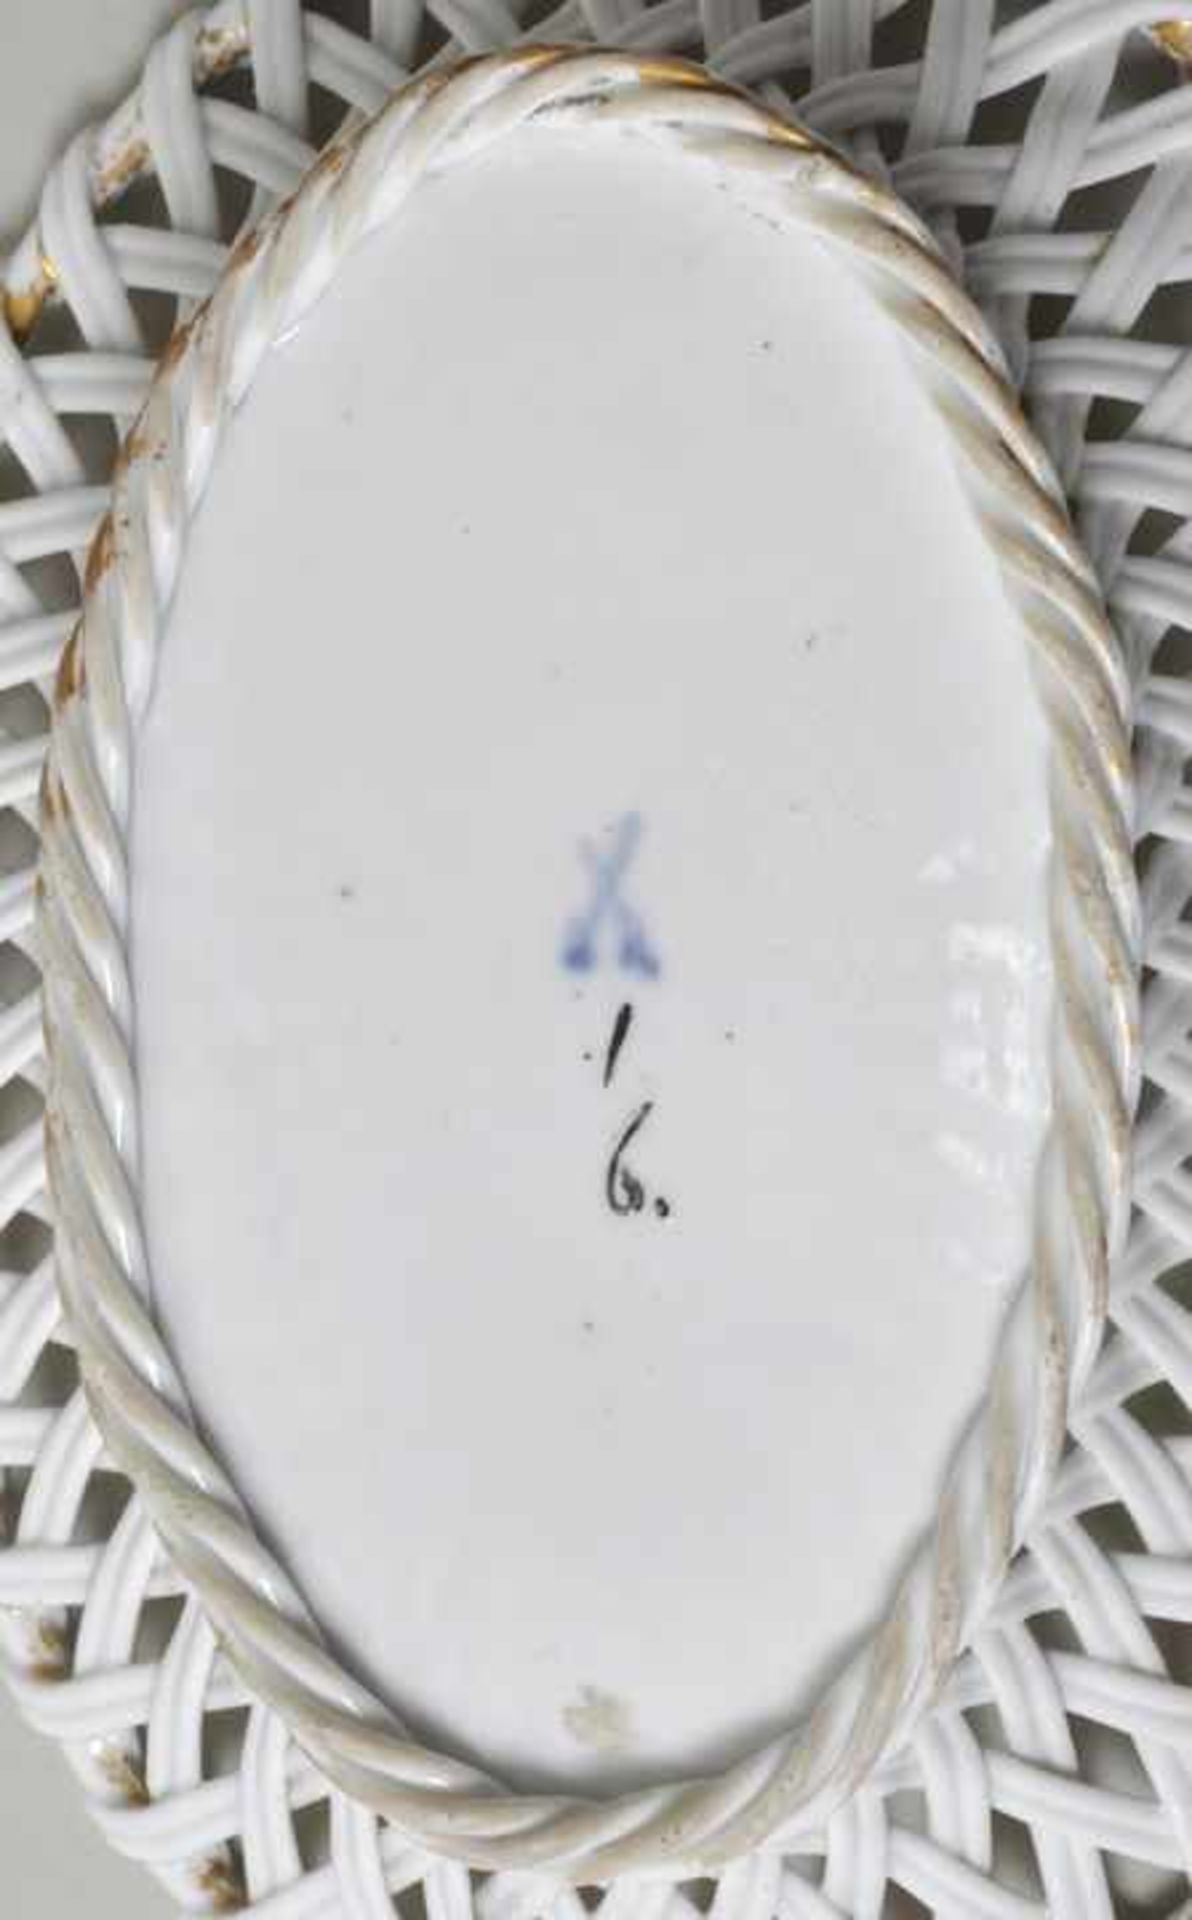 Körbchen, Meissen (?), 1. H. 19. Jh.Porzellan, ovale Form mit geflochtener Wandung, Bodenplatte - Bild 2 aus 2